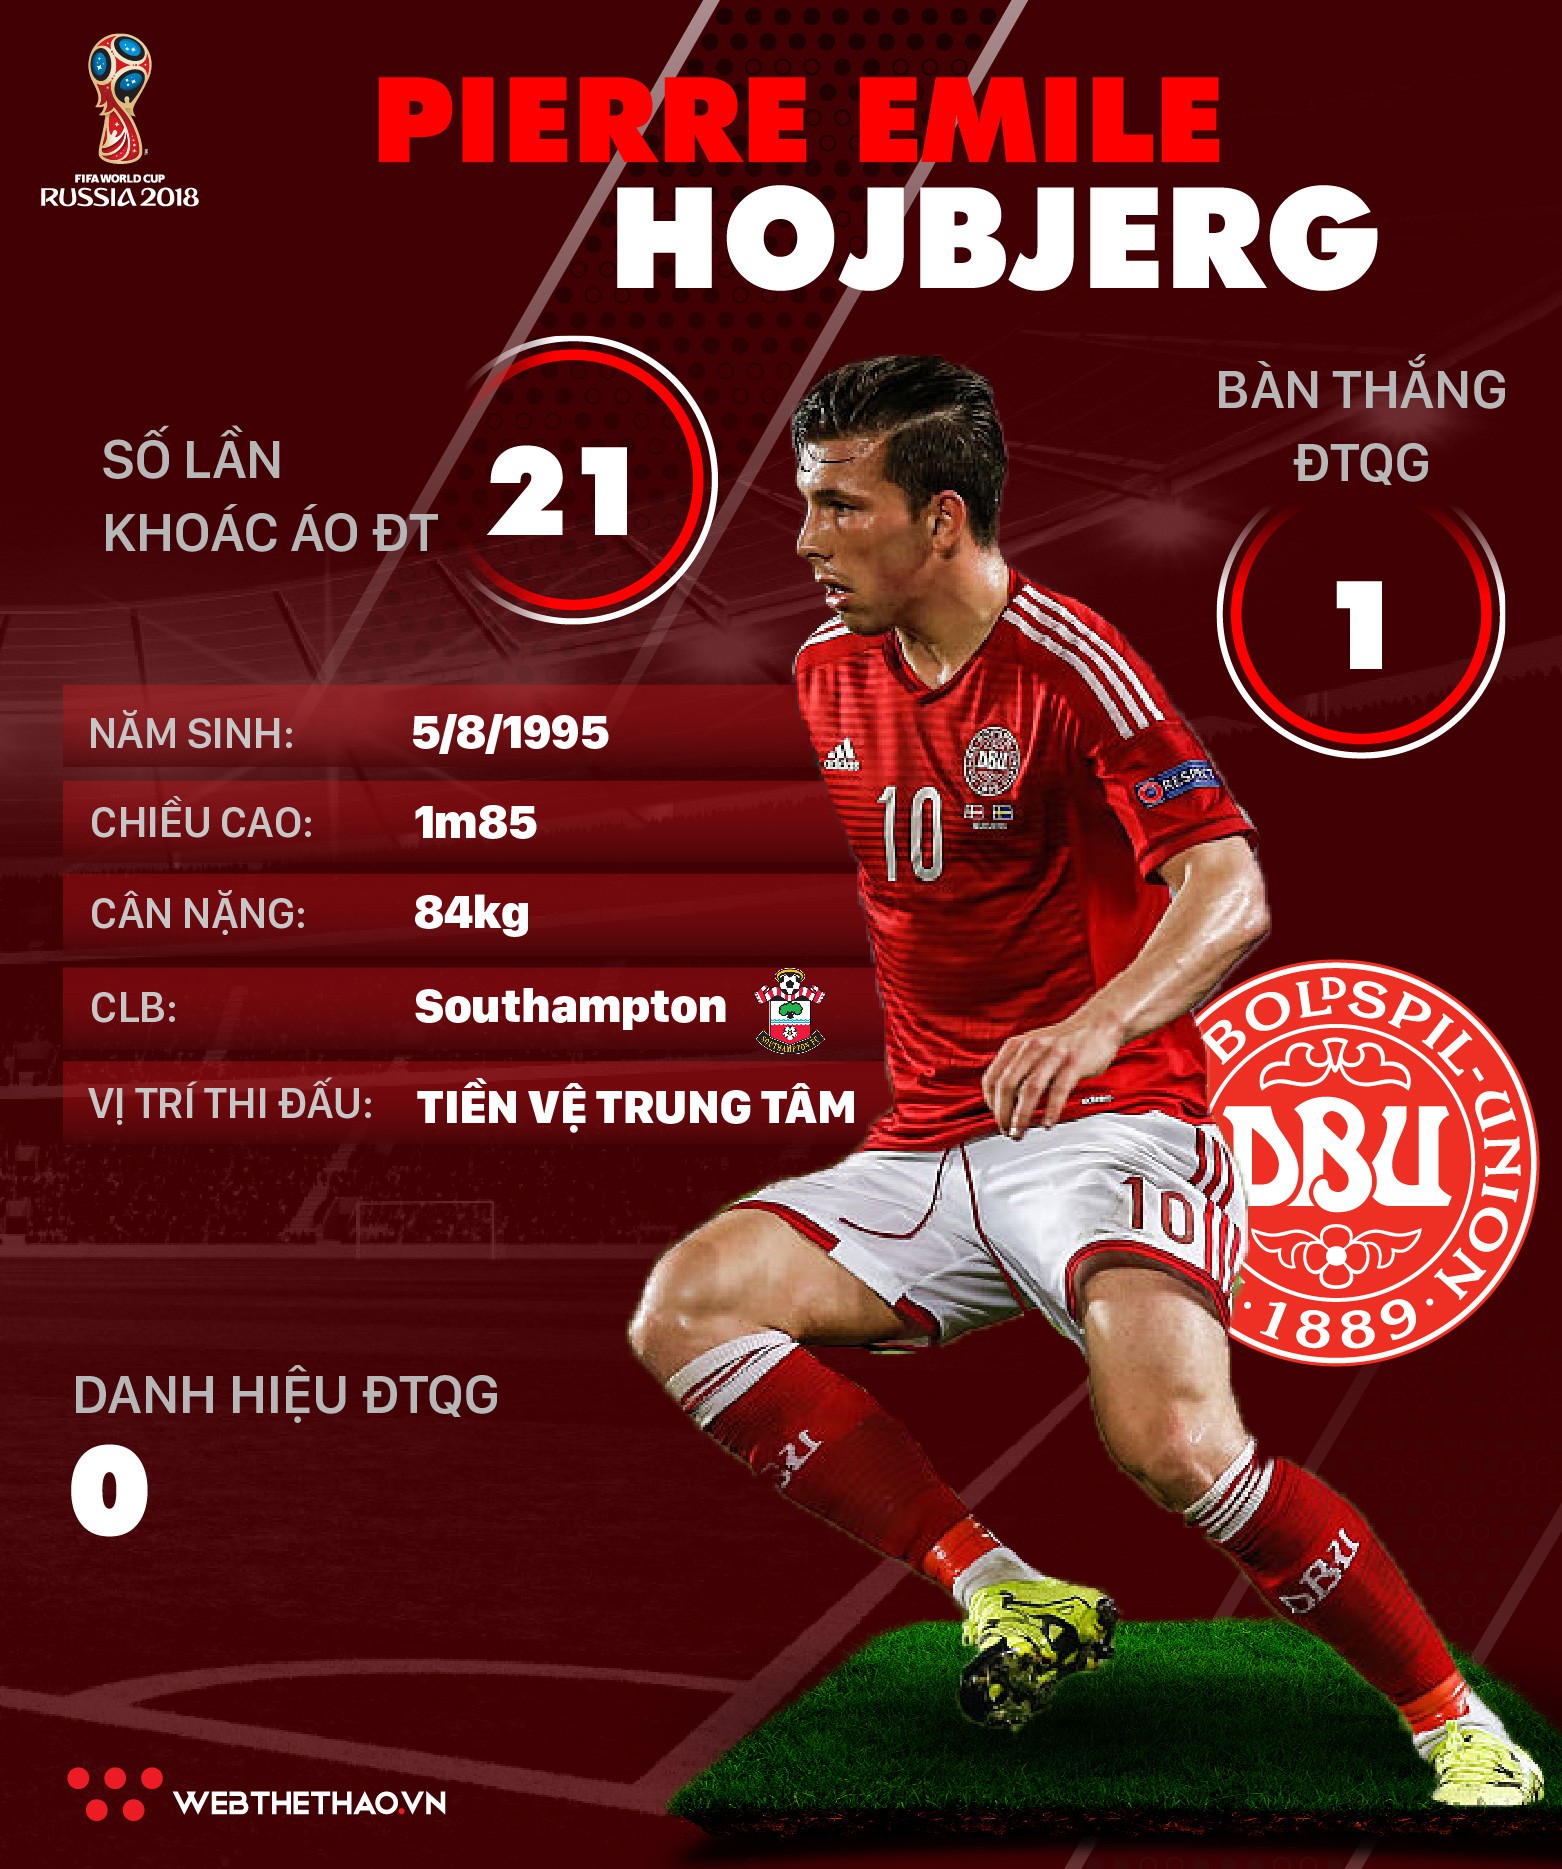 Thông tin cầu thủ Pierre Emile Hojbjerg của ĐT Đan Mạch dự World Cup 2018 - Ảnh 1.